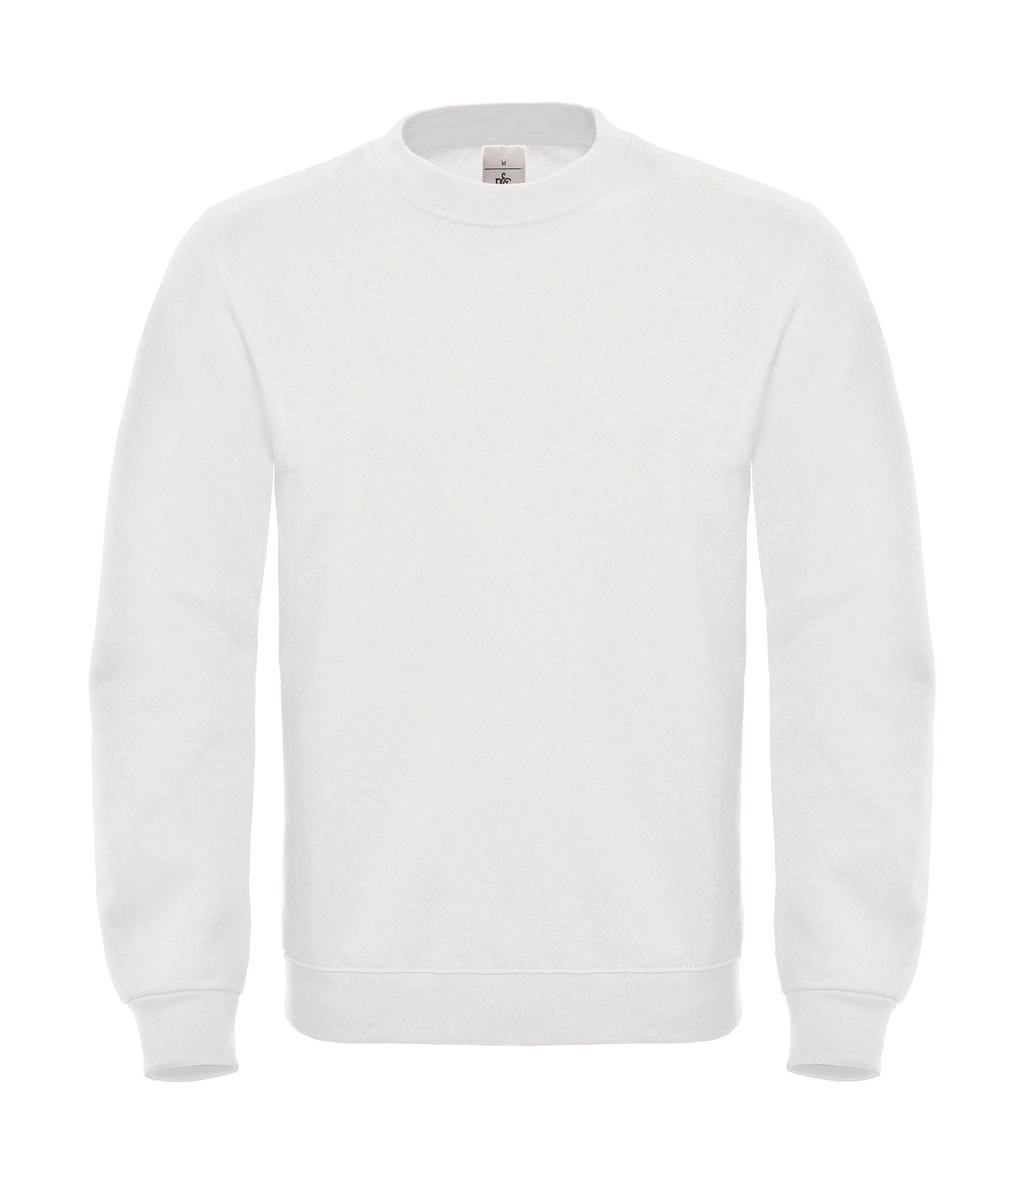 ID.002 Cotton Rich Sweatshirt  zum Besticken und Bedrucken in der Farbe White mit Ihren Logo, Schriftzug oder Motiv.